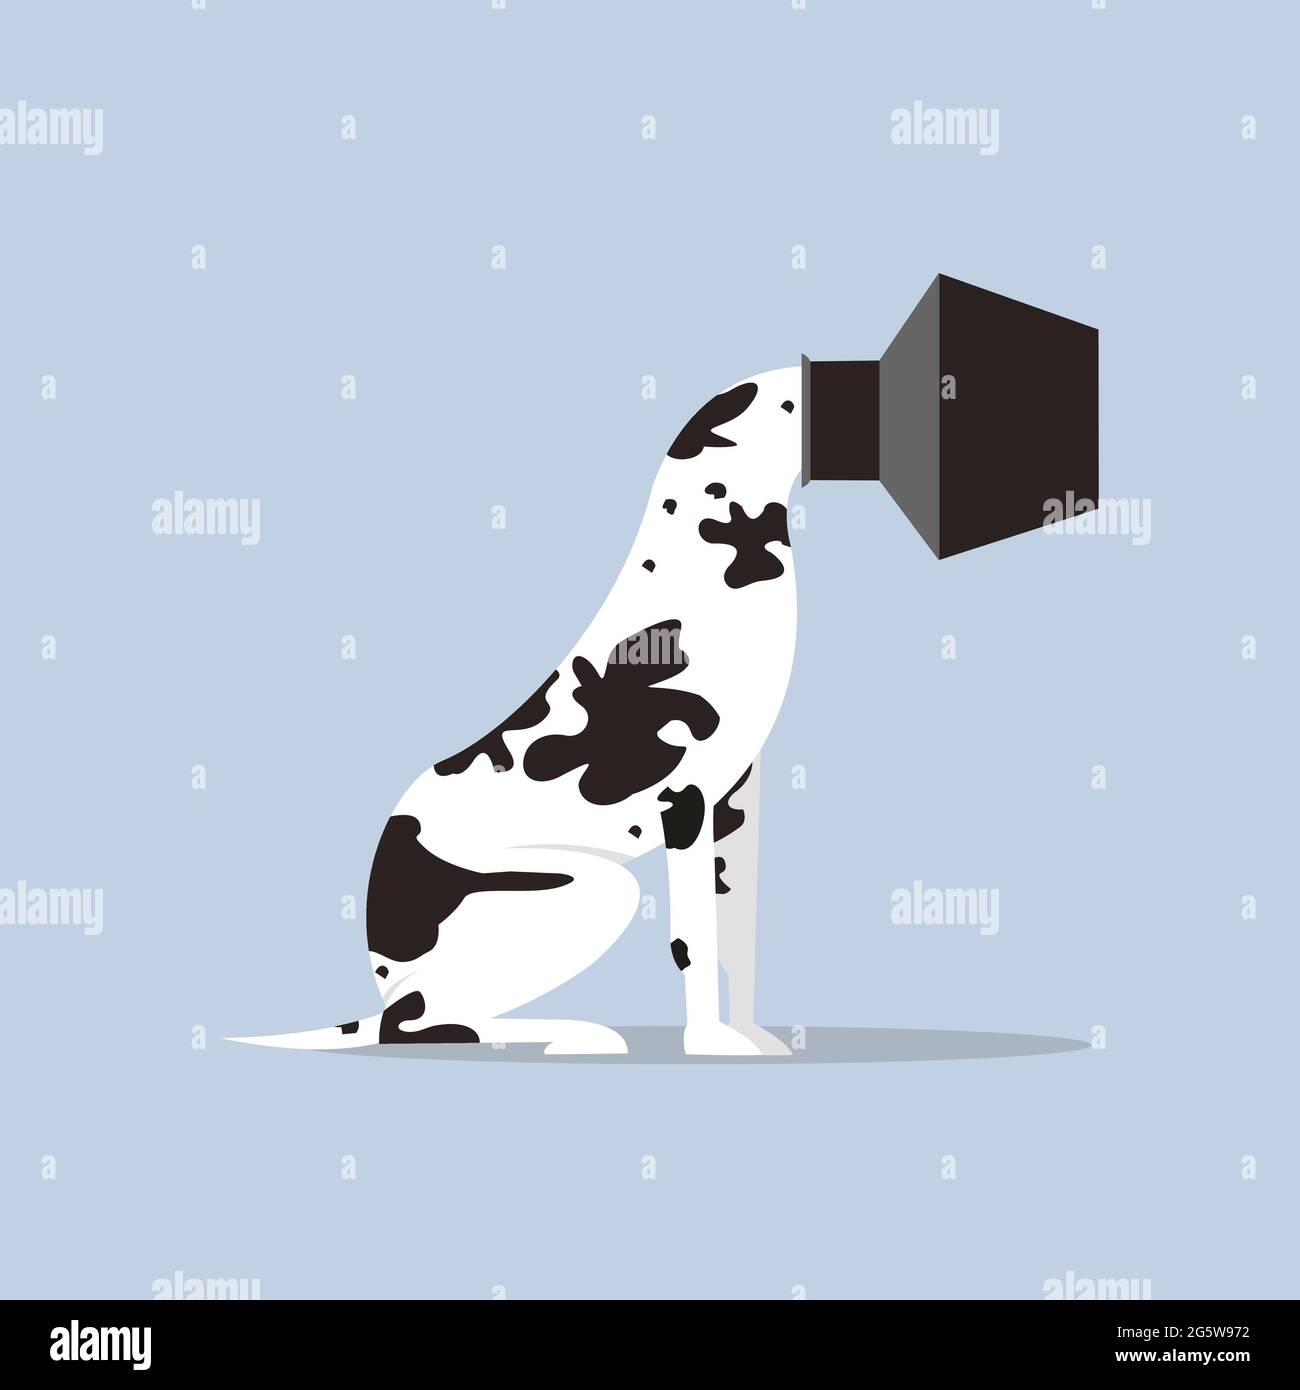 Illustrazione concettuale di un cane con la sua testa intrappolata all'interno di una pentola Illustrazione Vettoriale